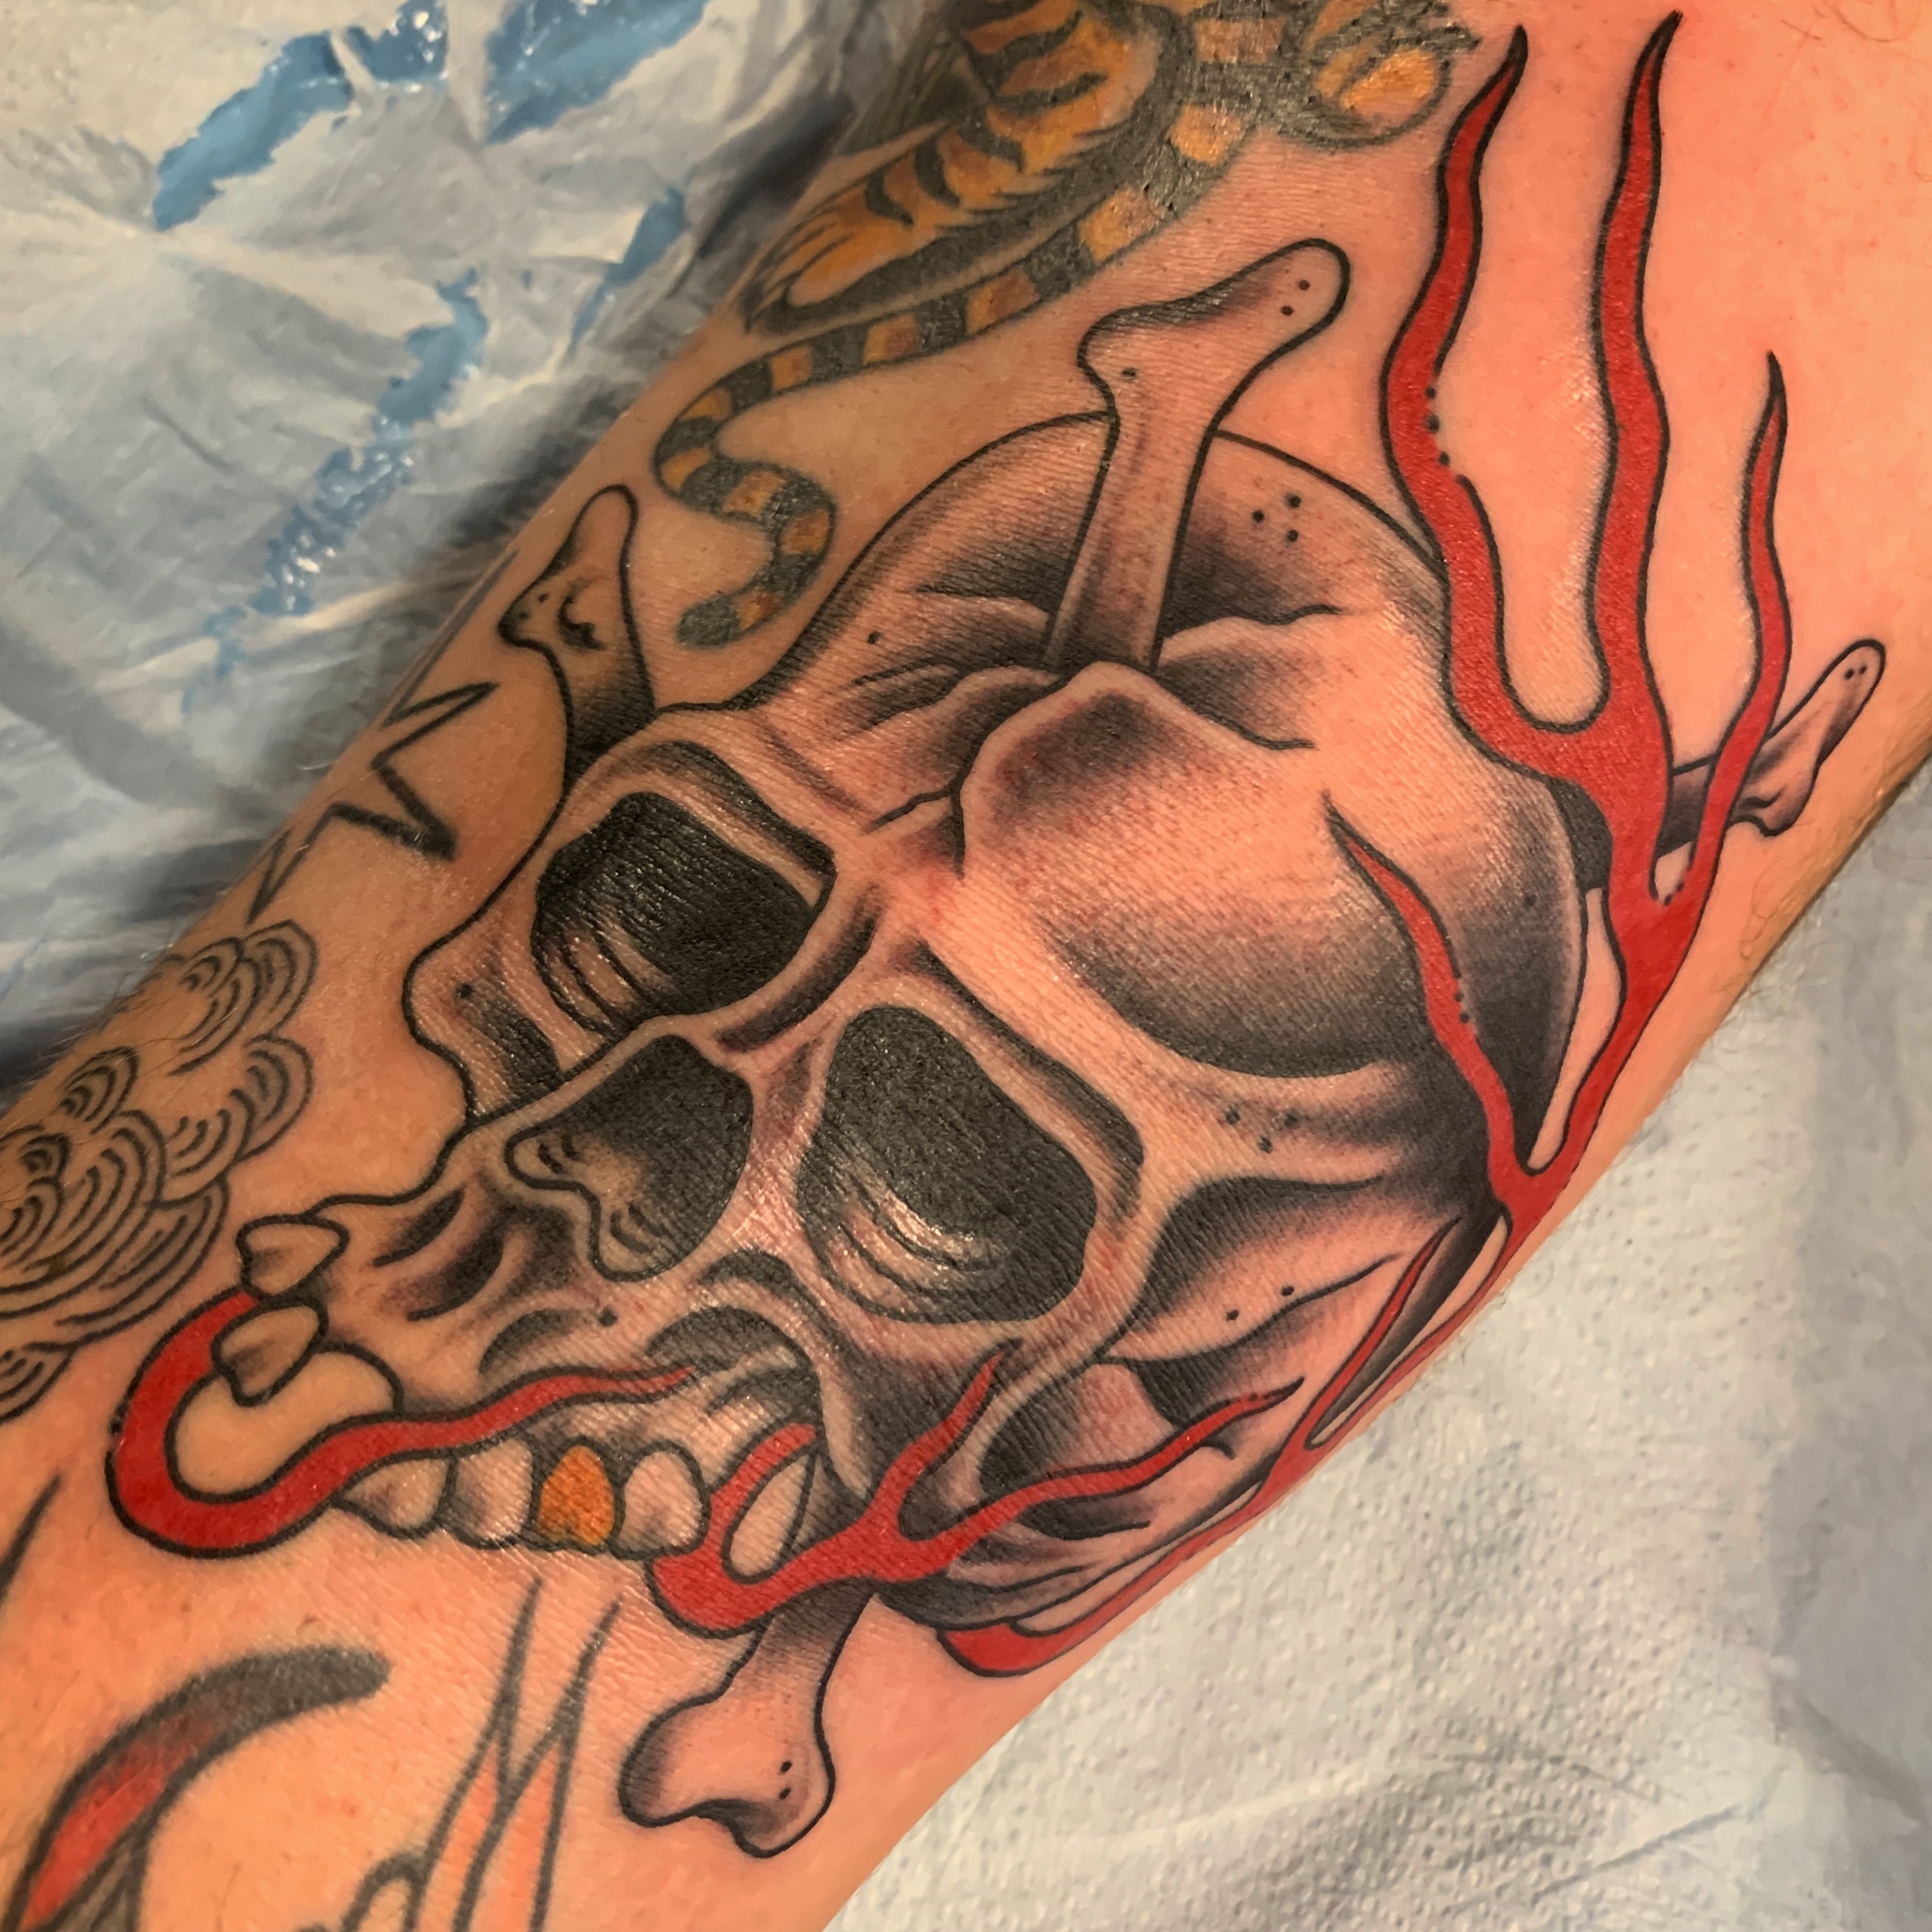 Skull on Fire Tattoo - Best Tattoo Ideas Gallery